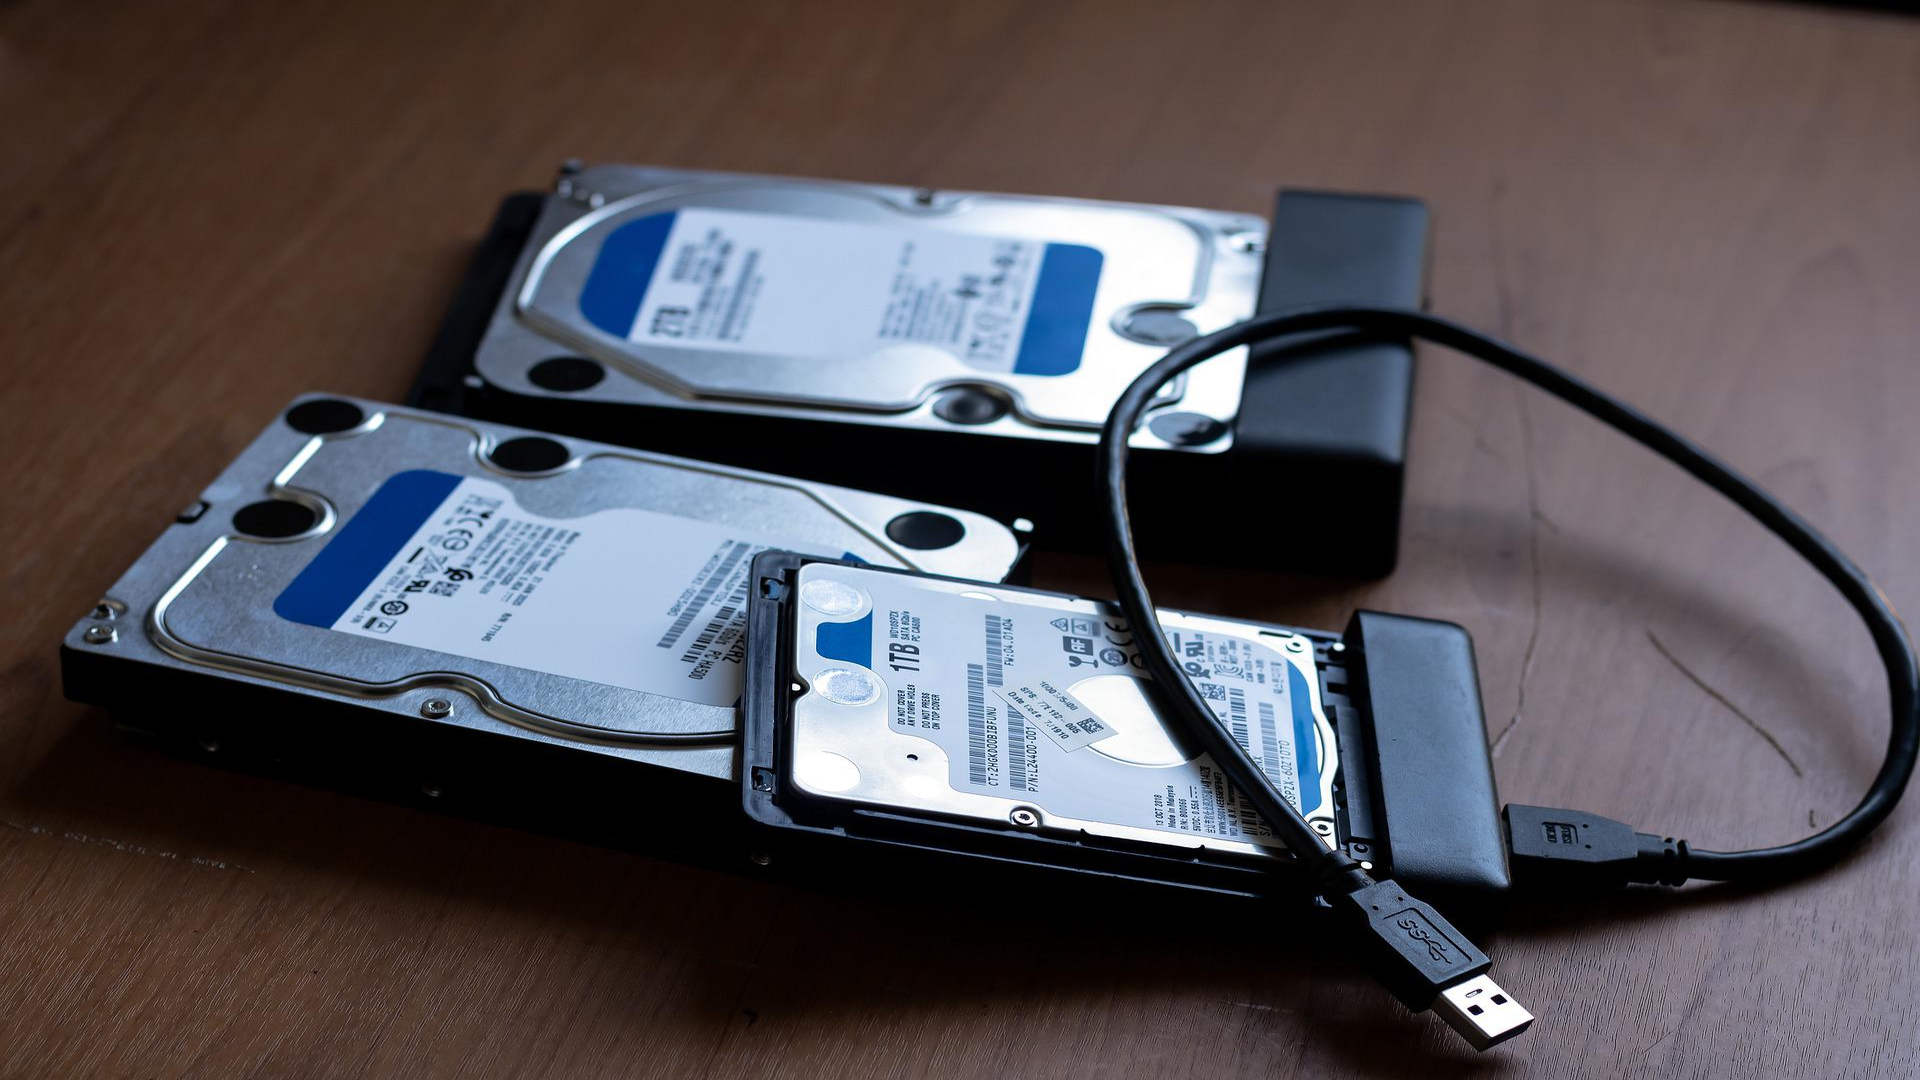 Internal hard drives and external HDDs